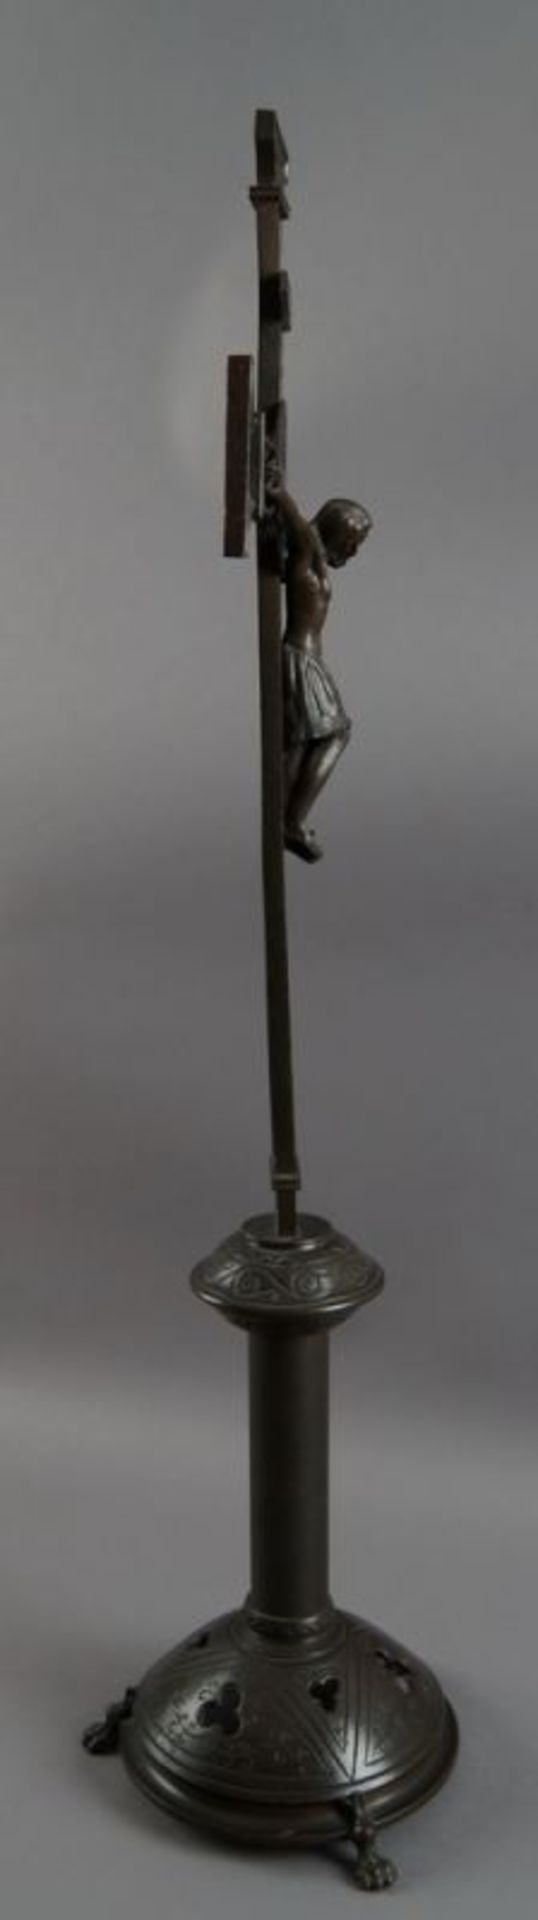 Romanisches Standkreuz mit Korpus Christi, Bronze, 19. JH, 77x30,5 cm 20.17 % buyer's premium on the - Bild 6 aus 7